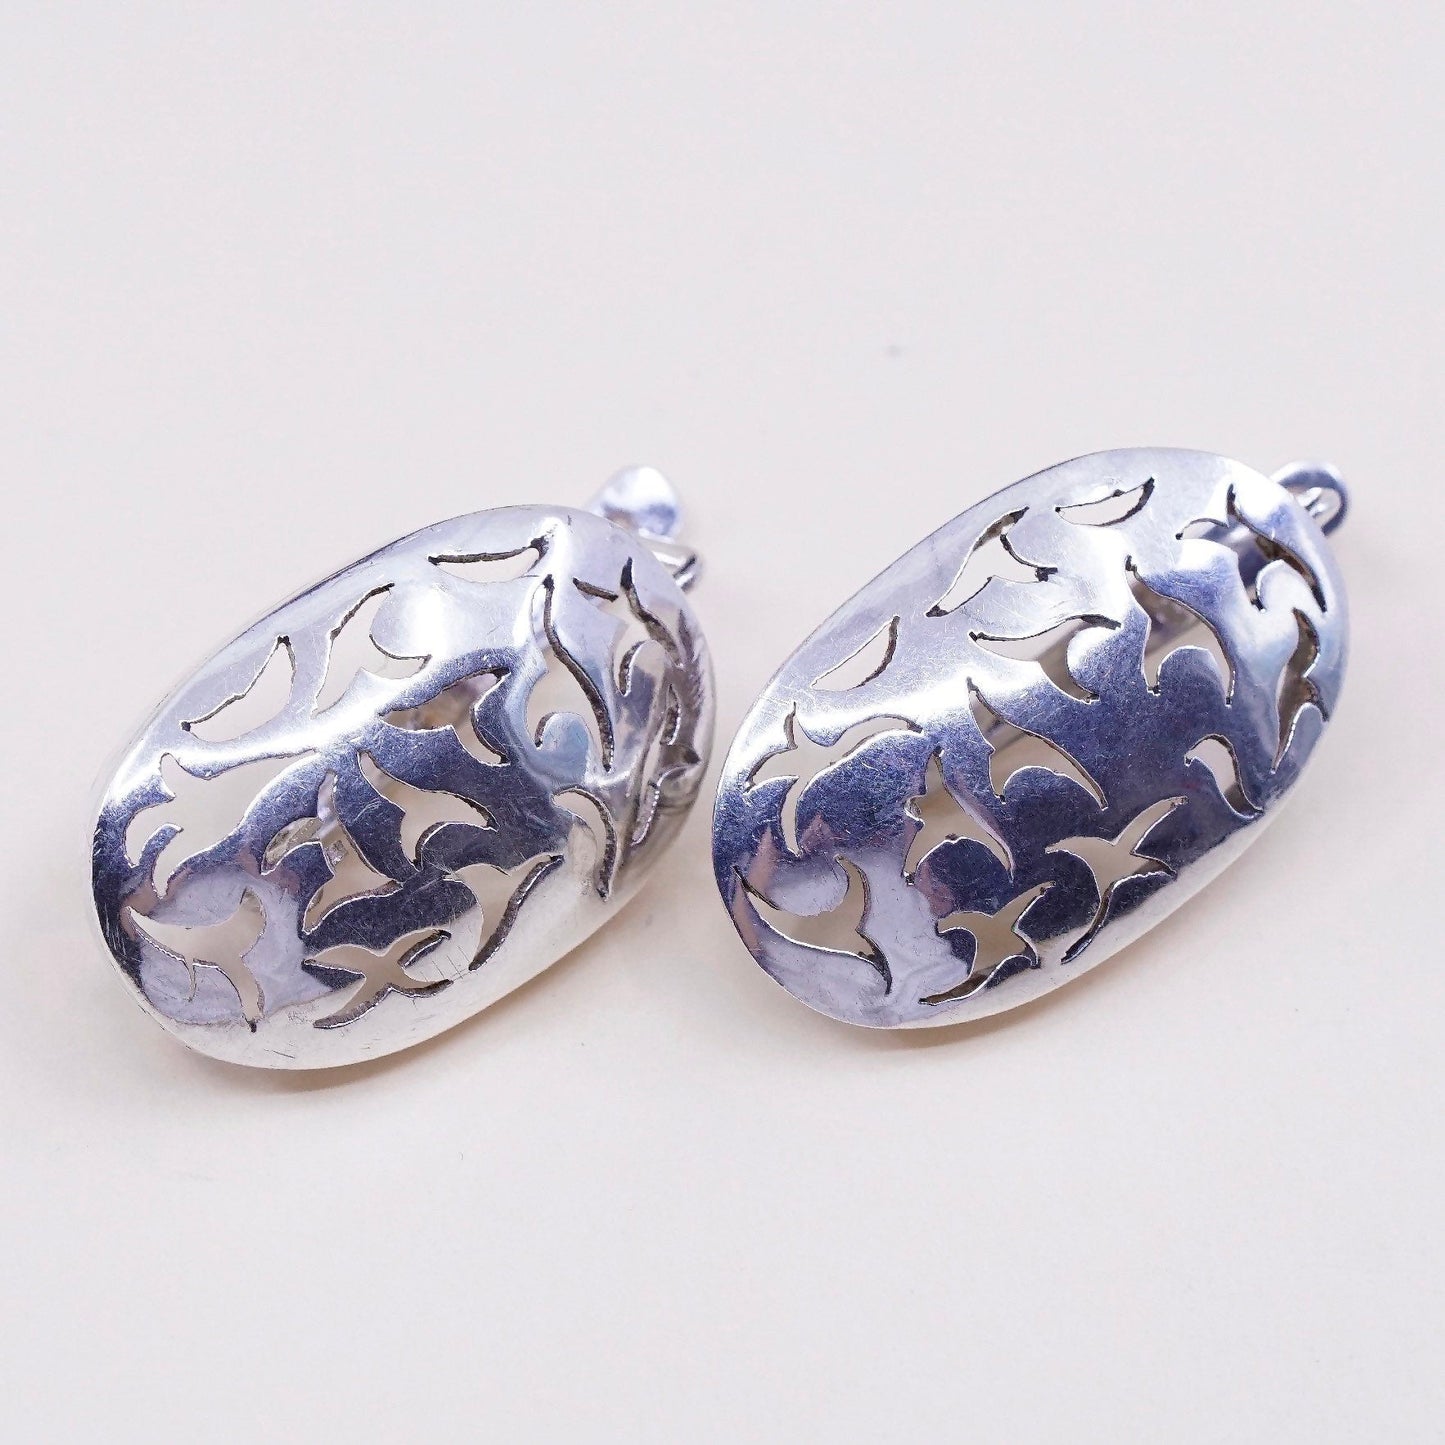 Vintage Sterling silver handmade earrings, 925 filigree studs